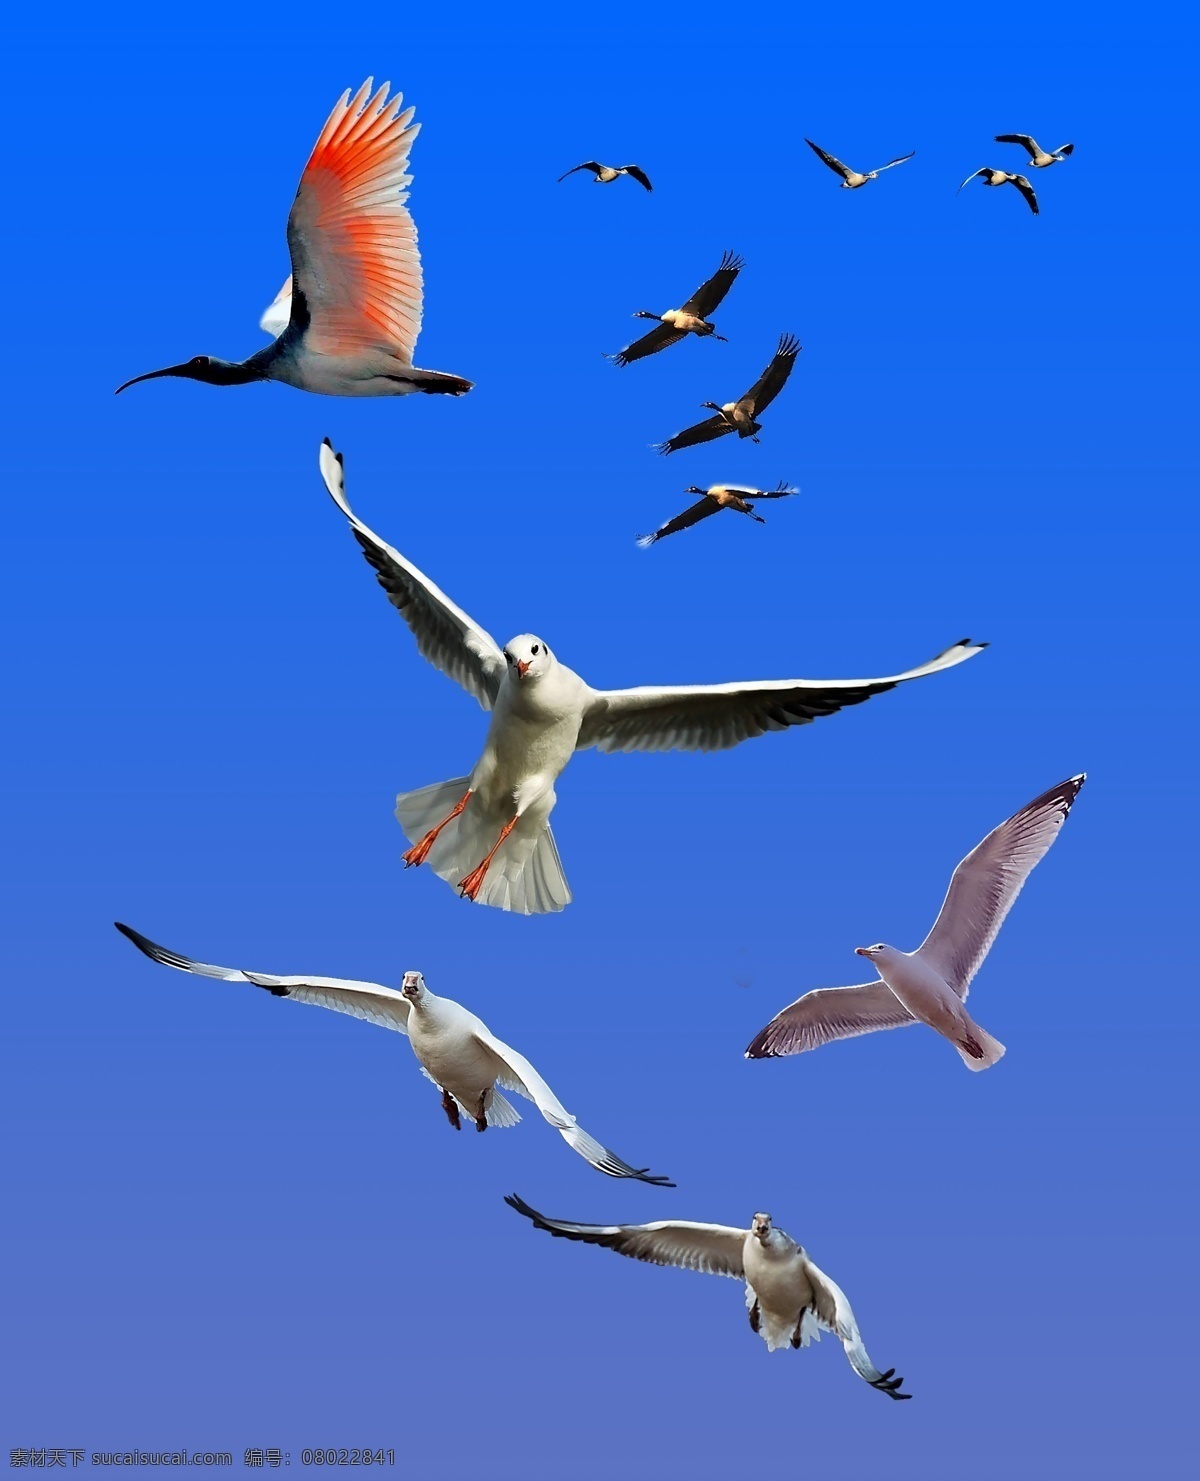 飞翔的鸟 鸟 海鸥 大鸟 蓝天 摄影模板 其他模板